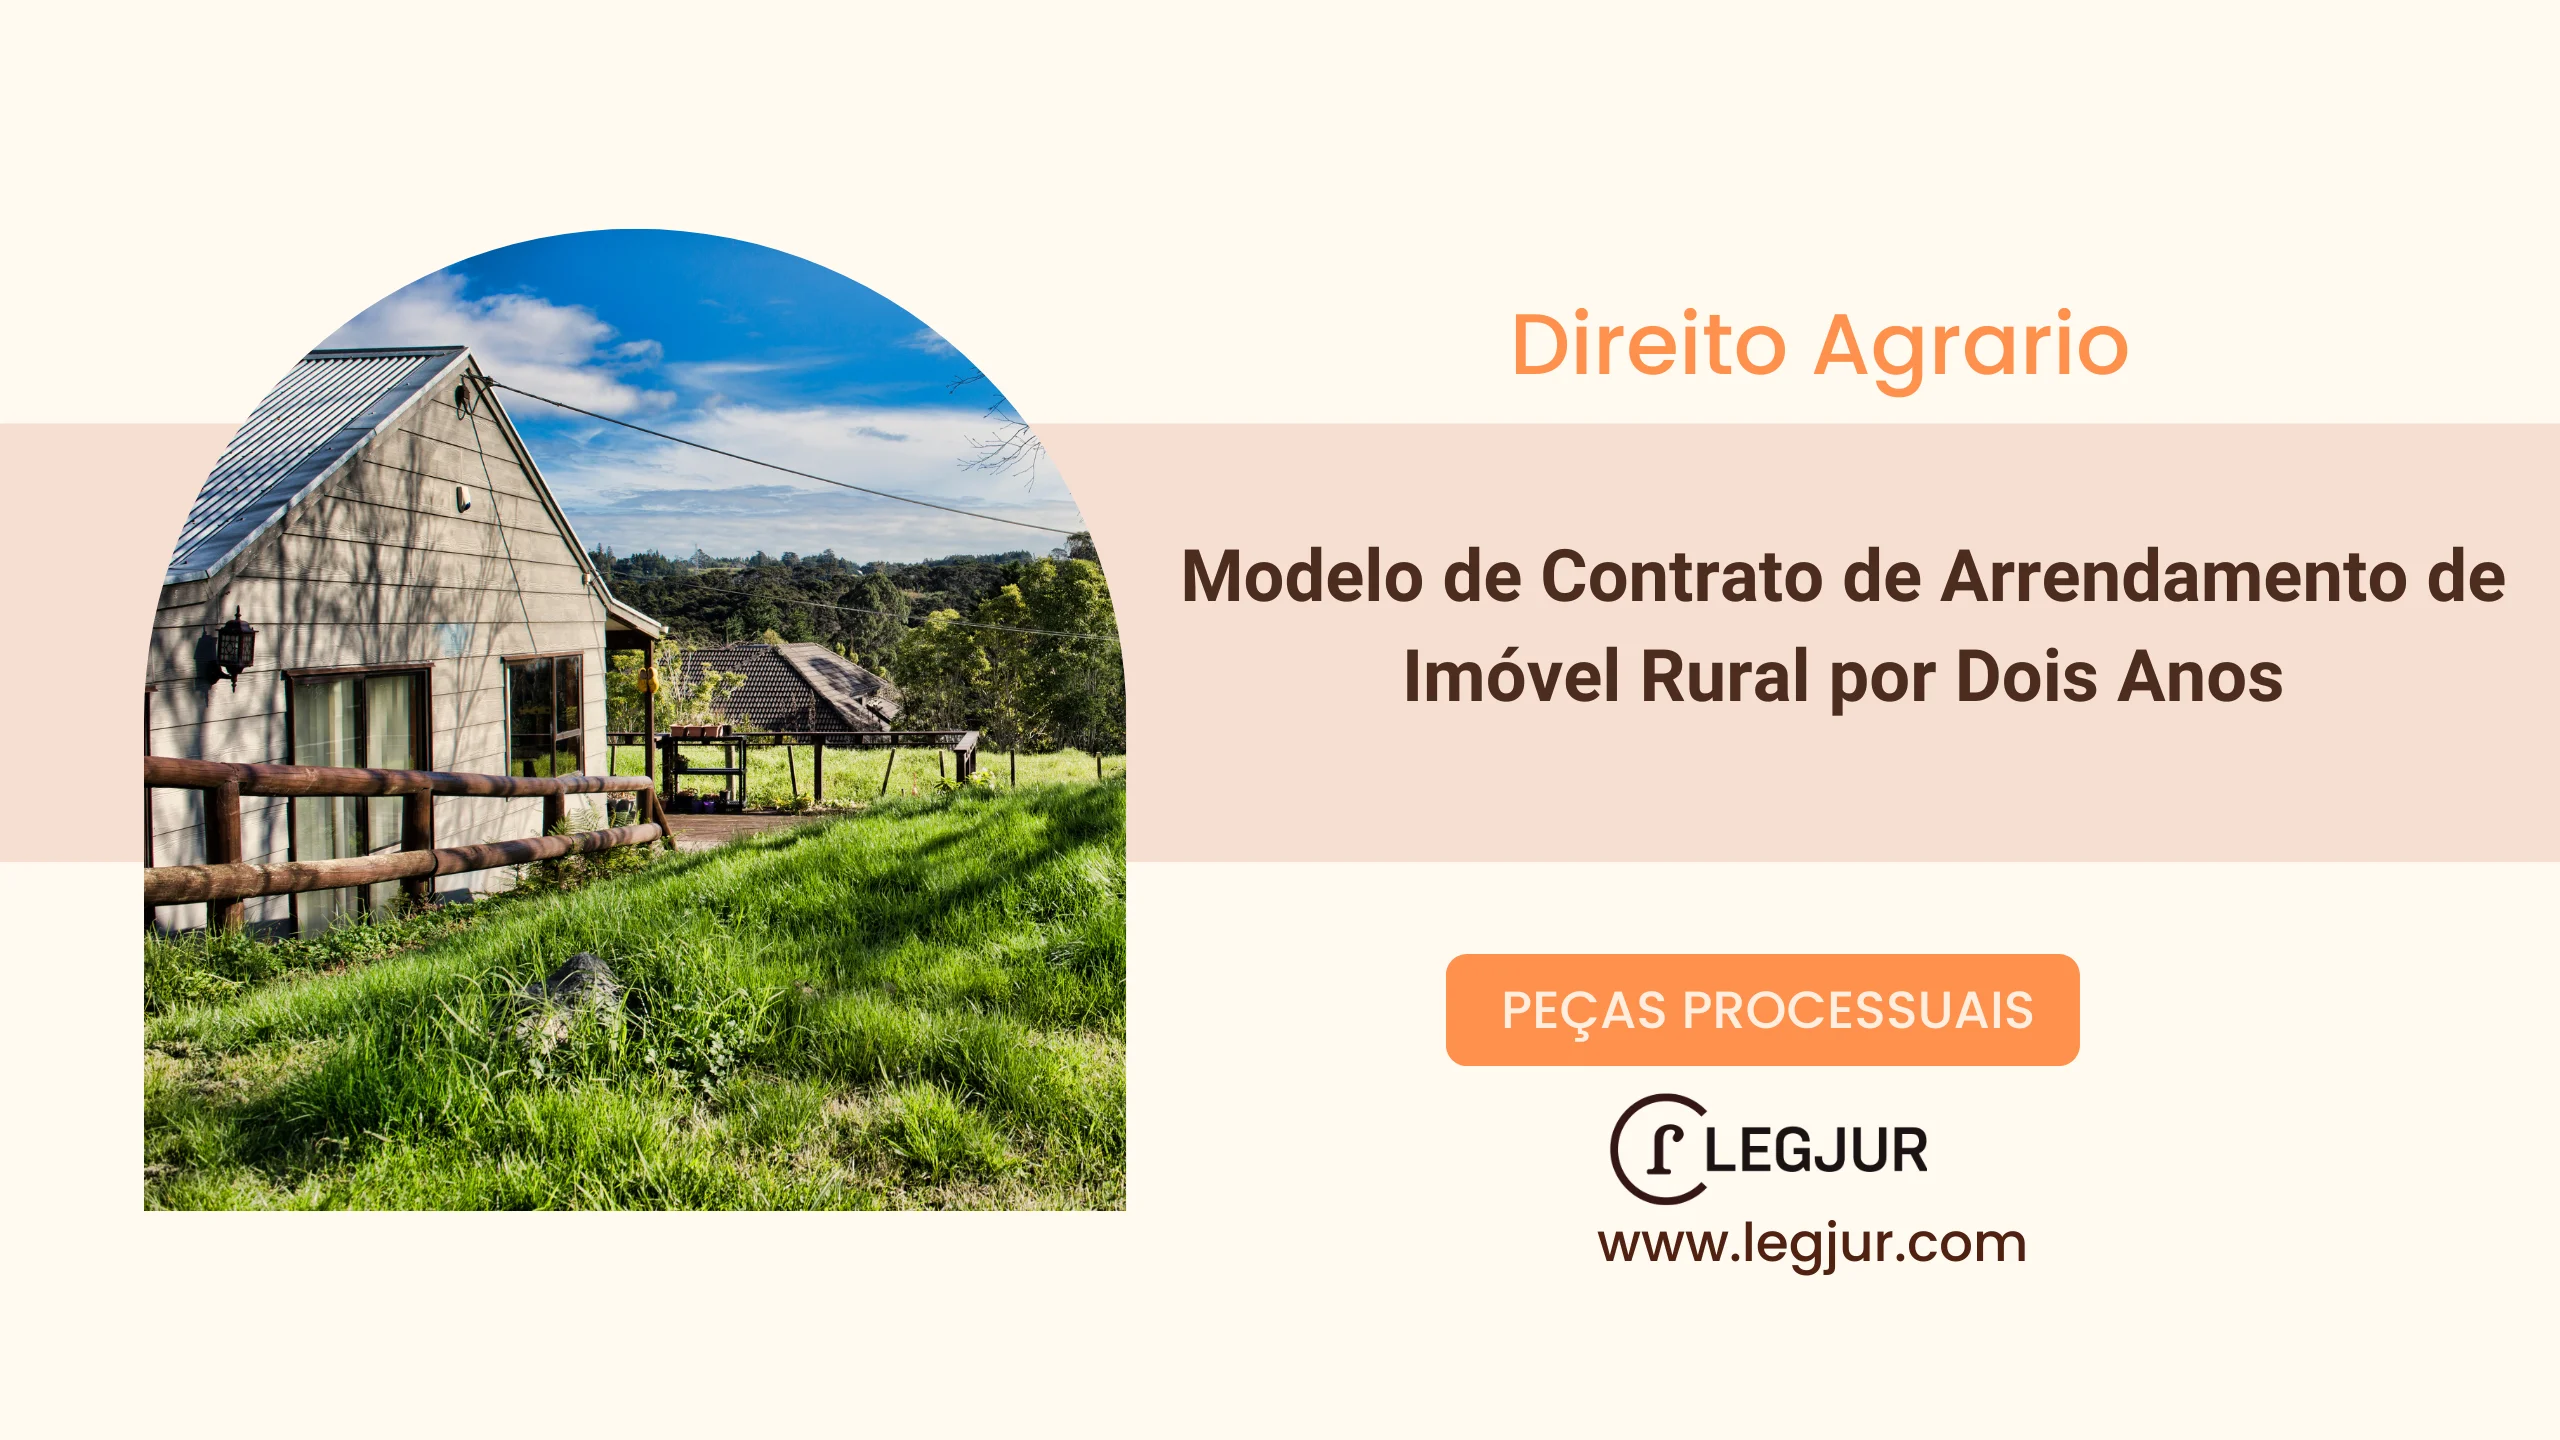 Modelo de Contrato de Arrendamento de Imóvel Rural por Dois Anos